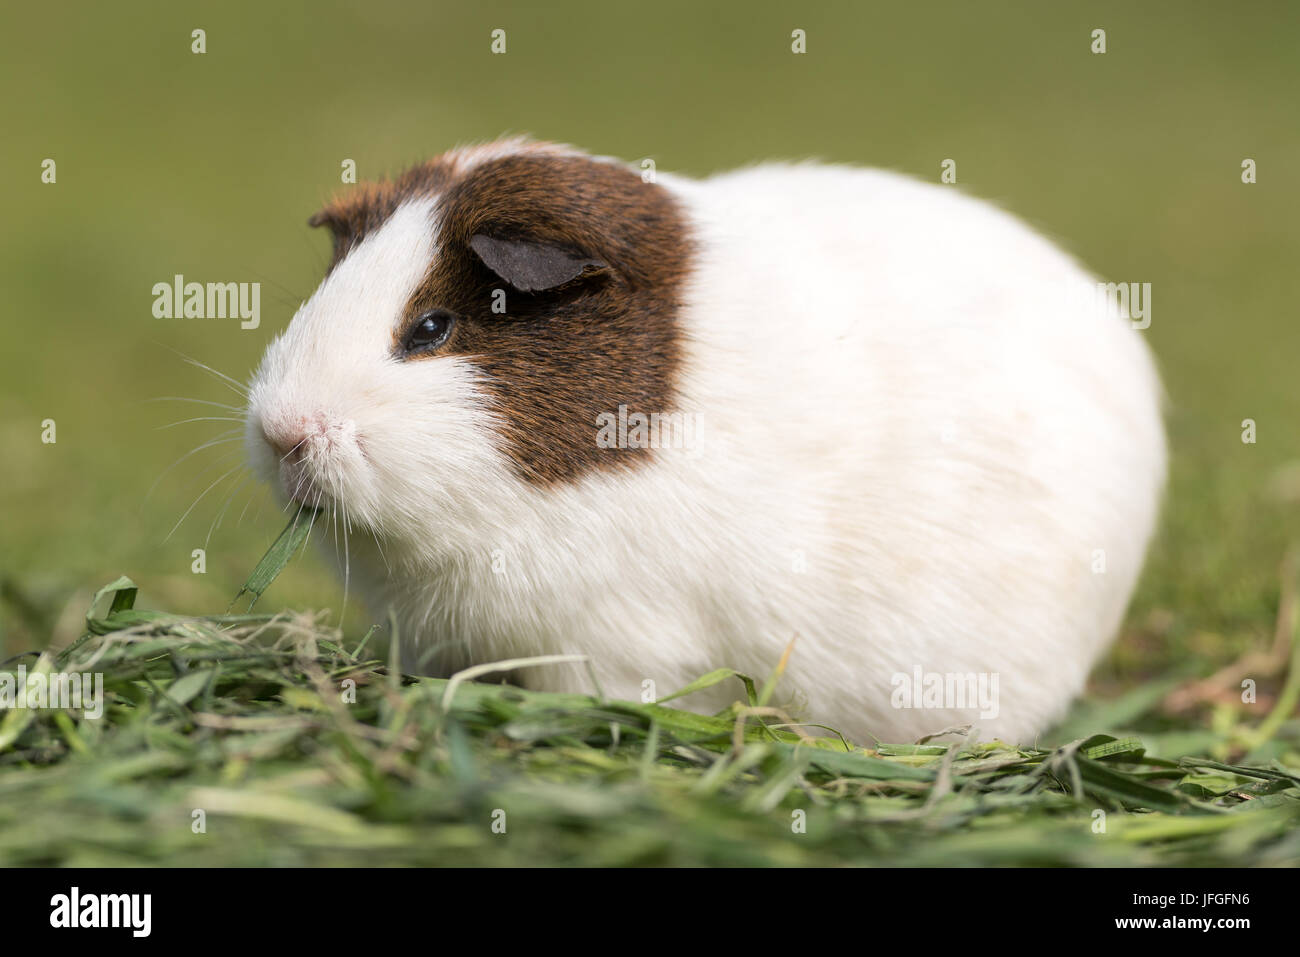 Guinea pig Stock Photo